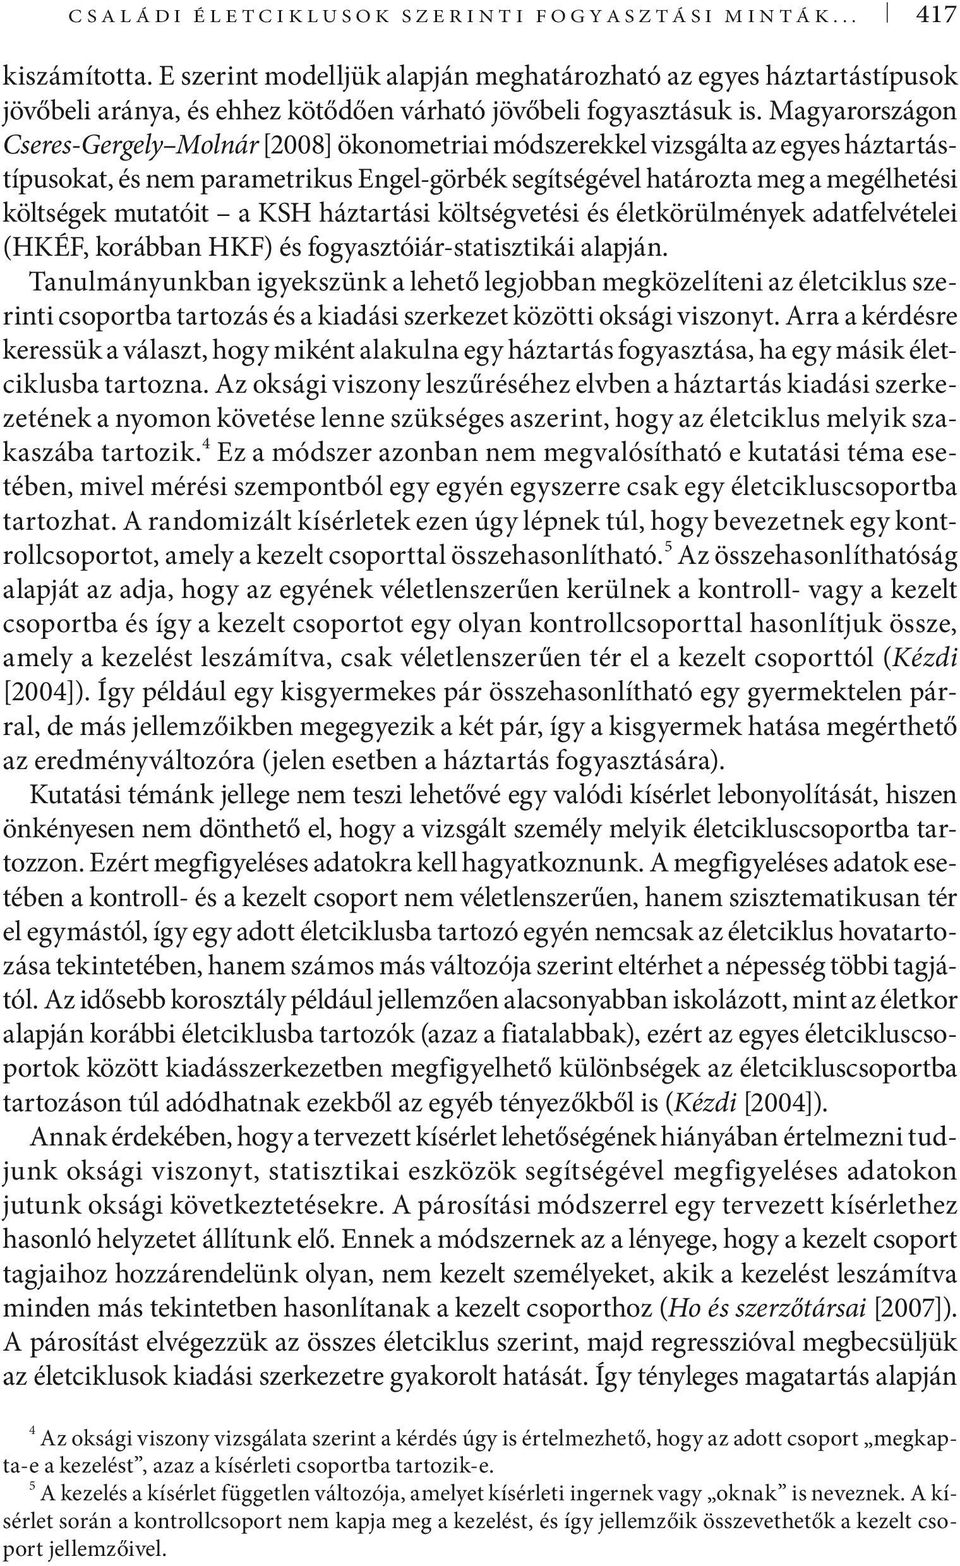 Magyarországon Cseres-Gergely Molnár [2008] ökonometriai módszerekkel vizsgálta az egyes háztartástípusokat, és nem parametrikus Engel-görbék segítségével határozta meg a megélhetési költségek